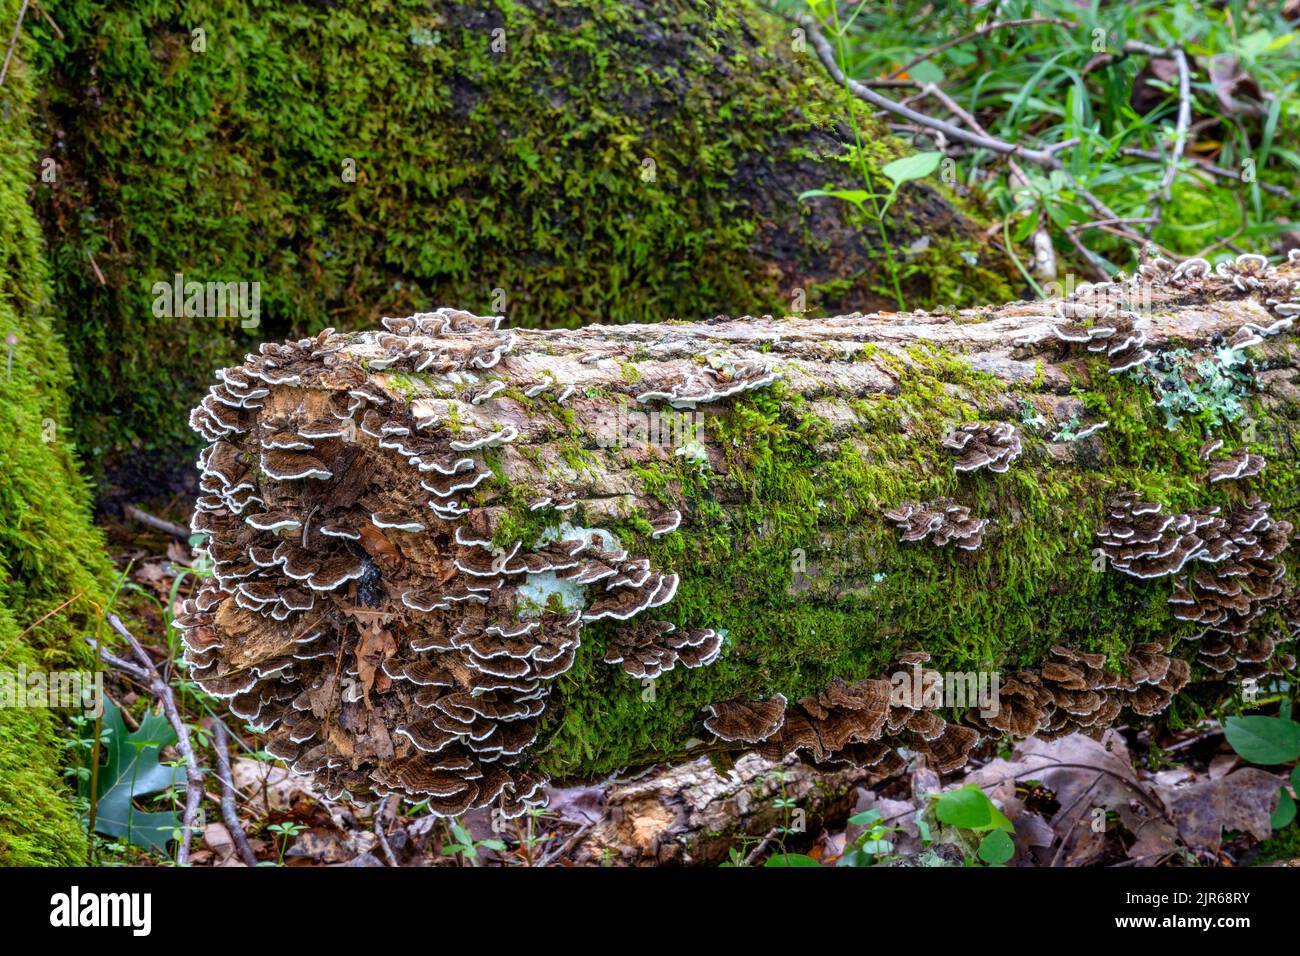 Hermosos hongos y musgo cultivados en un tronco de árbol en un bosque. Foto de stock